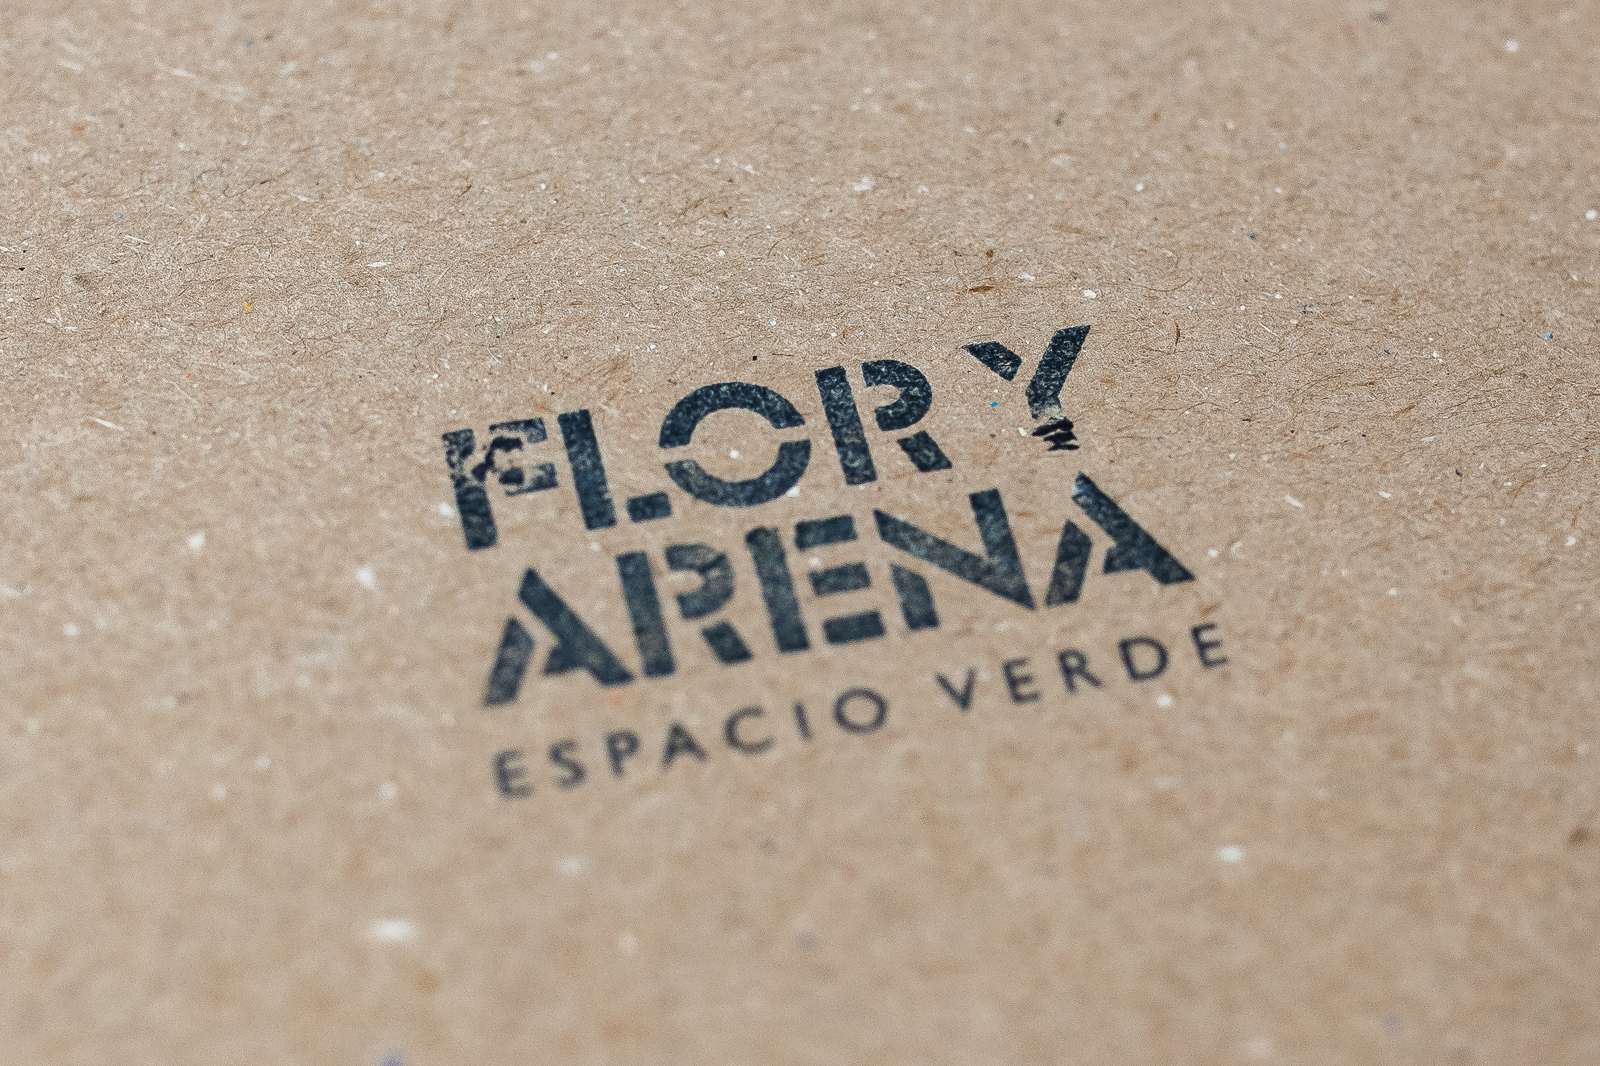 Pedro Cabañas - Design - FLOR Y ARENA